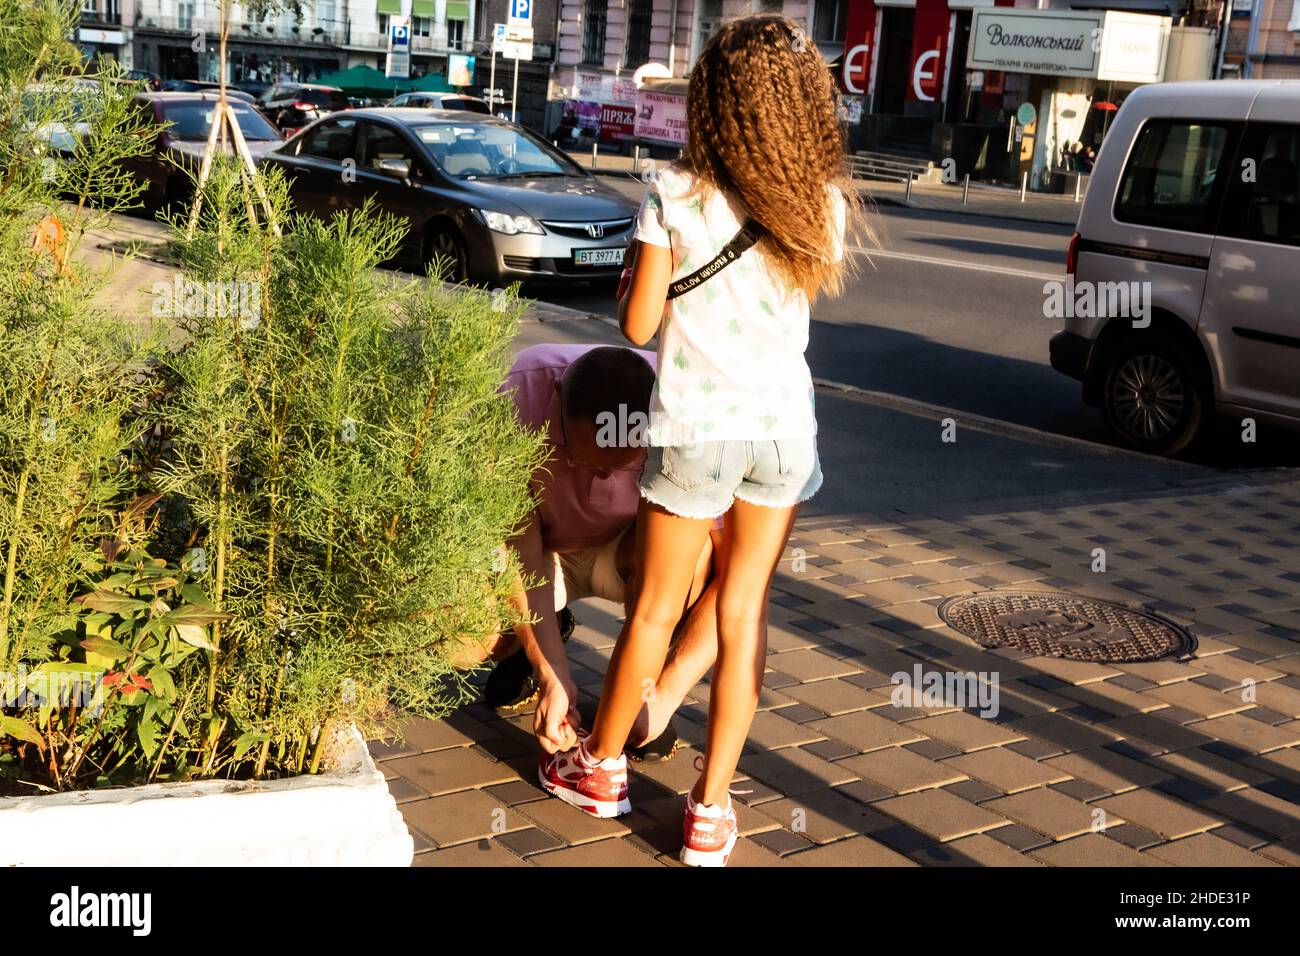 Papa hilft der Tochter, an sonnigen Sommertagen auf einer Straße in Kiew Schnürsenkel an ihren Sneakers zu binden. Mädchen nimmt Hilfe mit wunderbarer Stille und königlicher Anmut an. Stockfoto